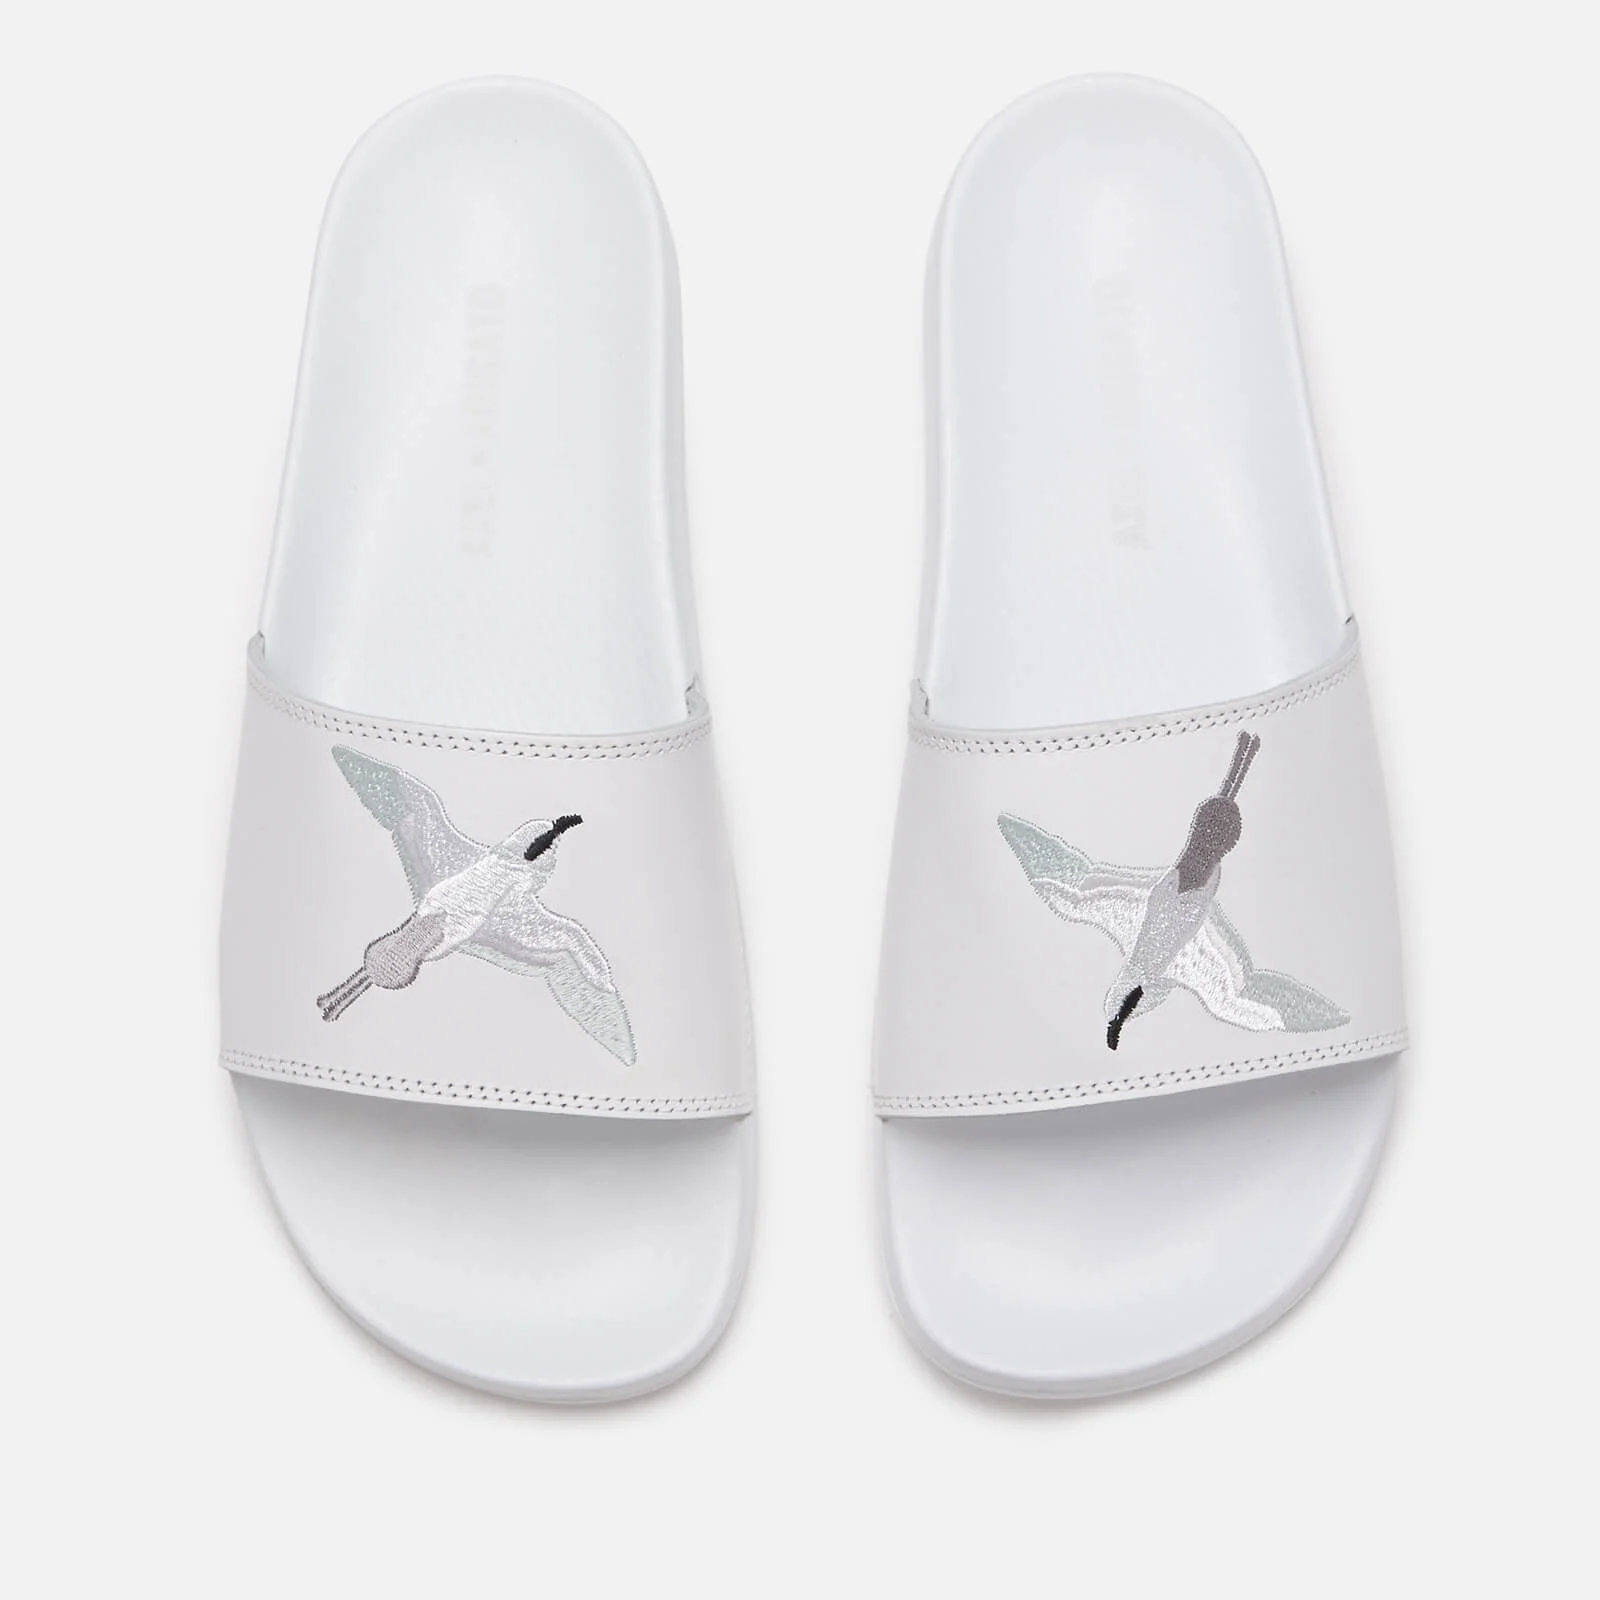 Axel Arigato Men's Slide Sandals - White Image 1